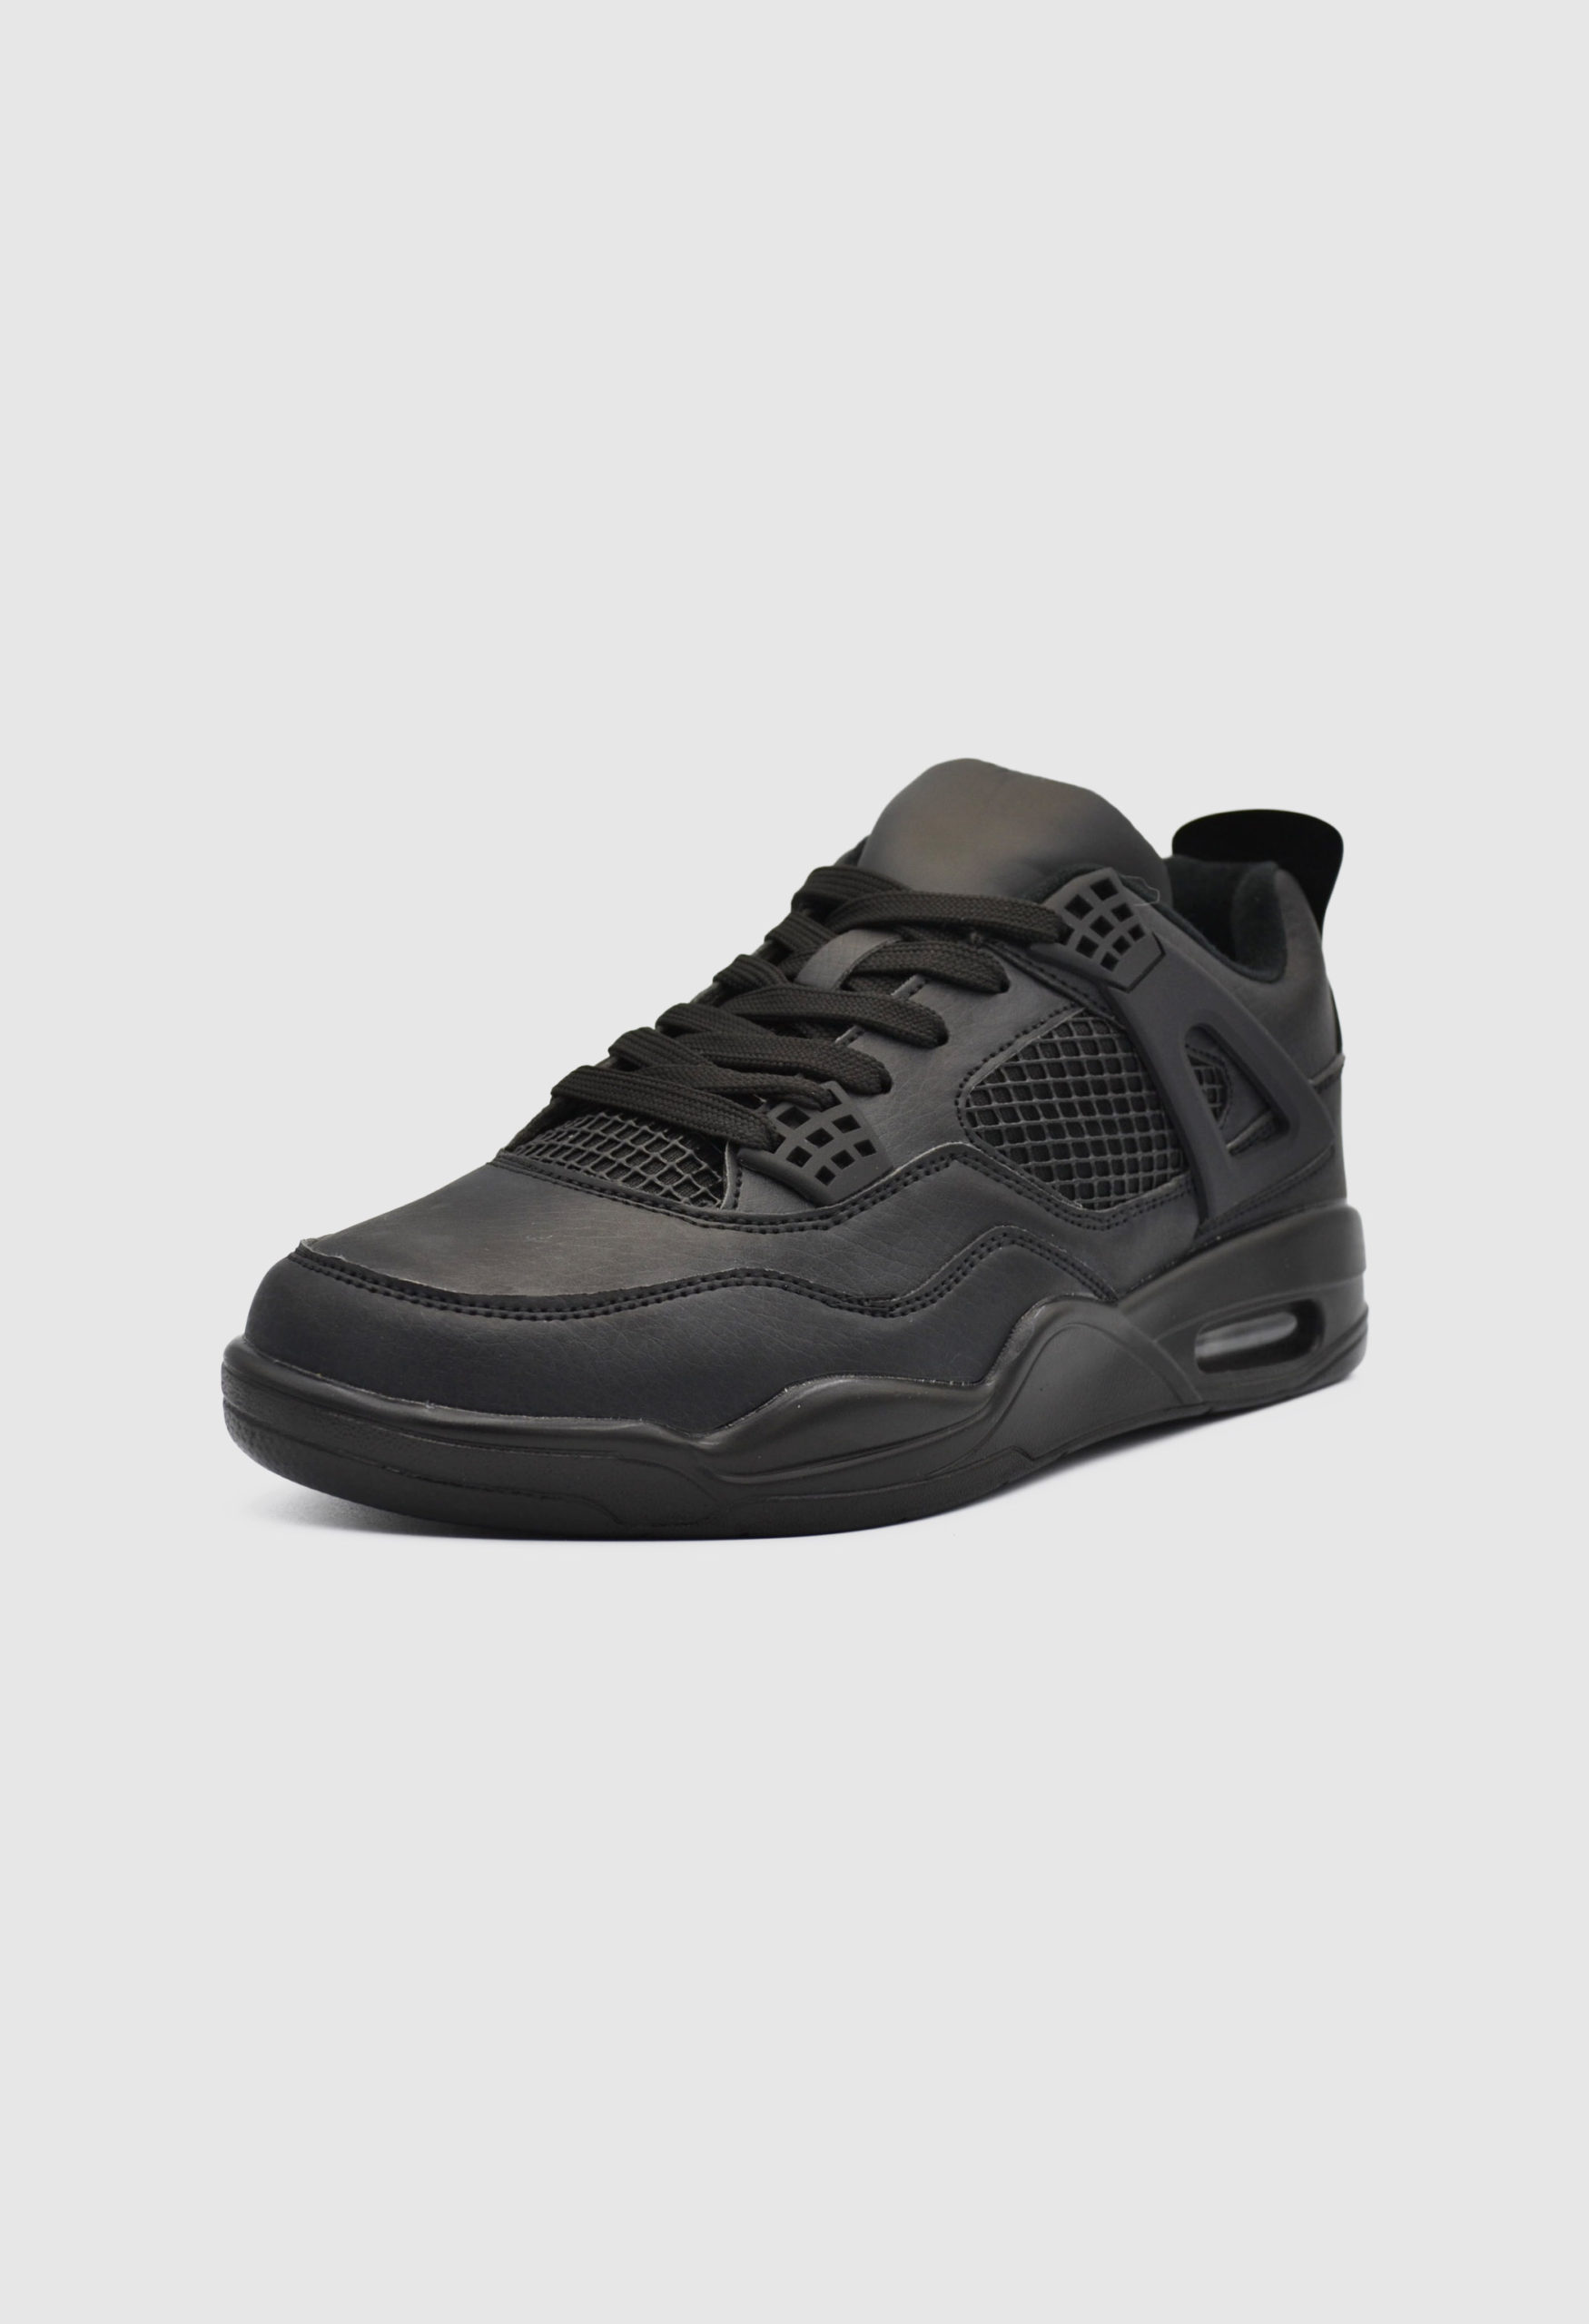 Ανδρικά Sneakers Μαύρα / 9151128 ΑΘΛΗΤΙΚΑ & SNEAKERS joya.gr